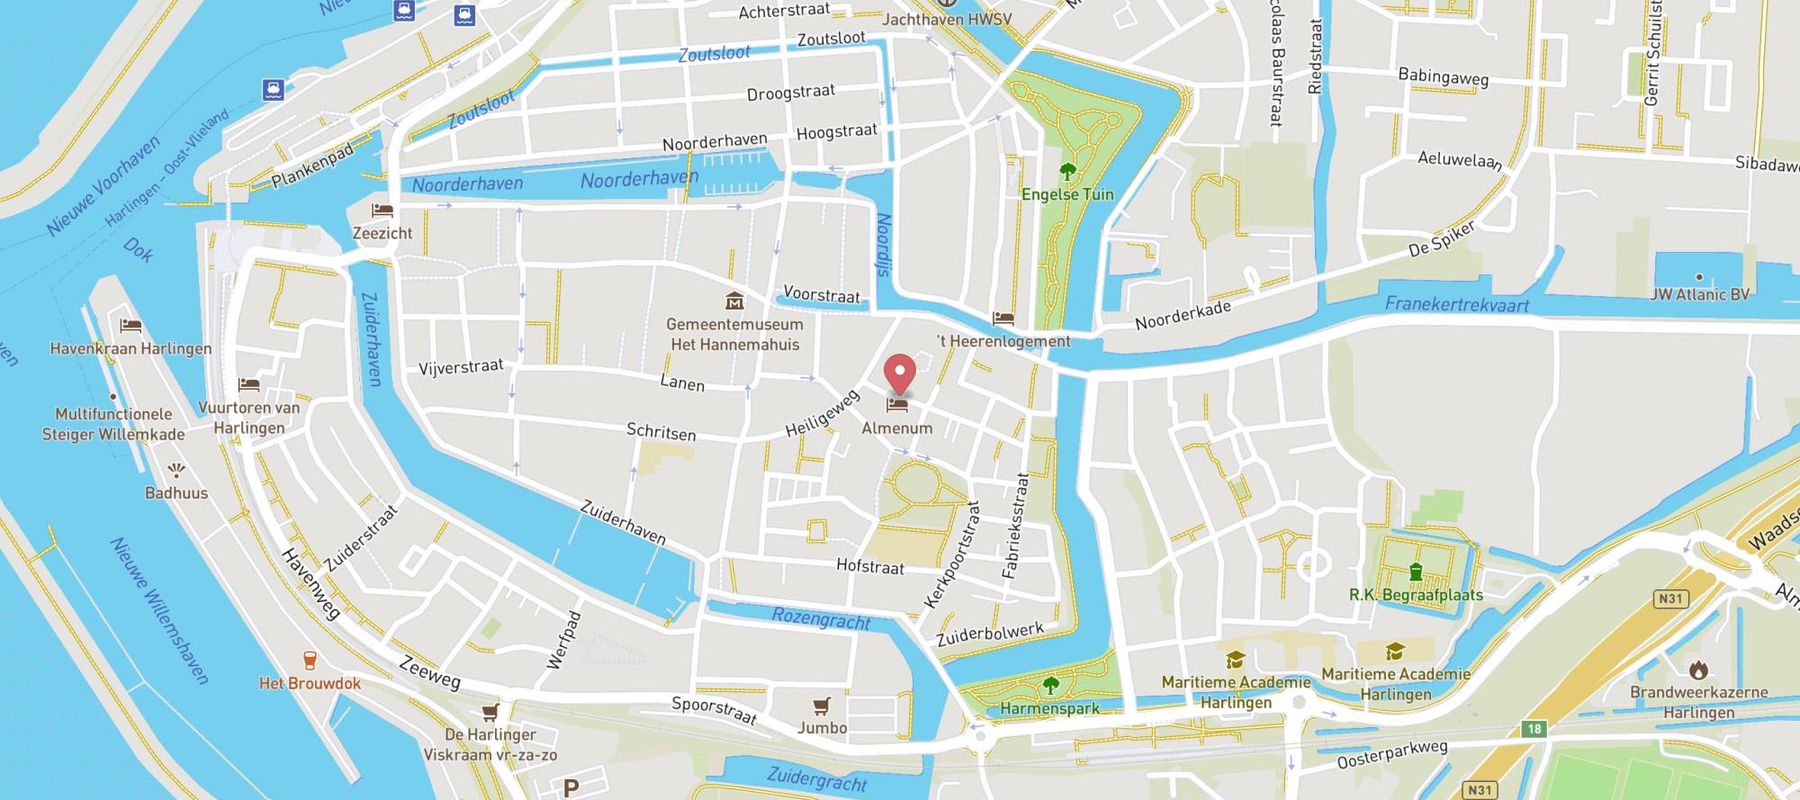 Hotel Almenum - het sfeervolle stadslogement - map